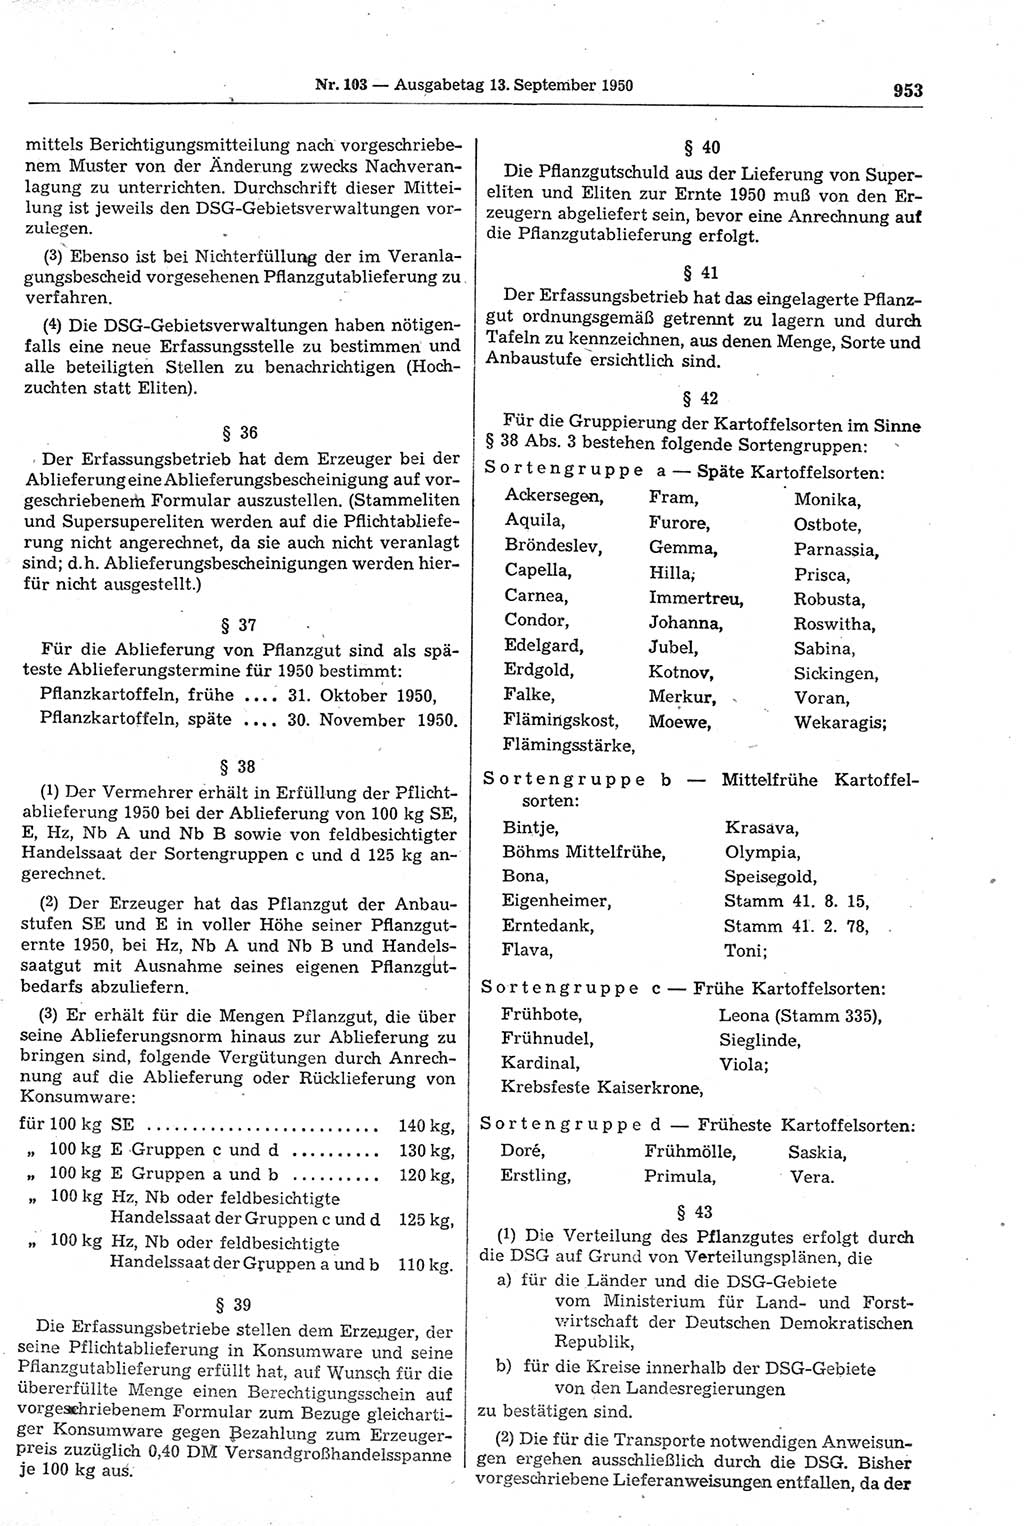 Gesetzblatt (GBl.) der Deutschen Demokratischen Republik (DDR) 1950, Seite 953 (GBl. DDR 1950, S. 953)